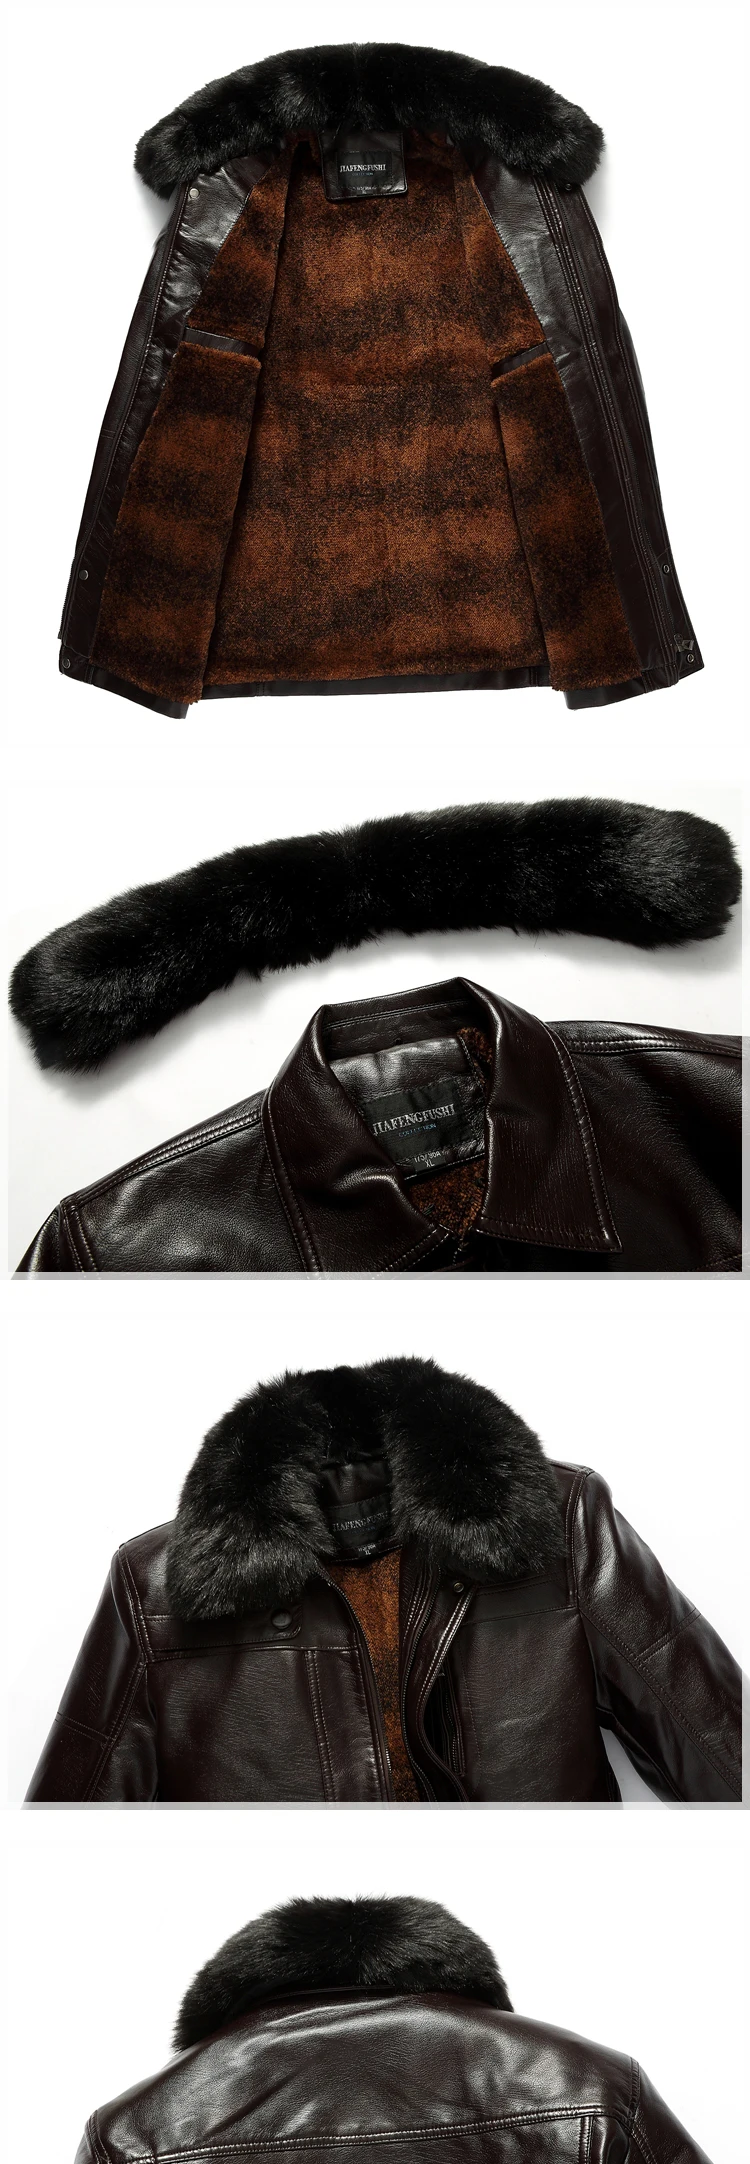 Jaqueta masculina Лидер продаж jaqueta couro Для мужчин кожаная куртка пальто мужской отложным воротником Мото-куртки зима Для мужчин xl-7xl